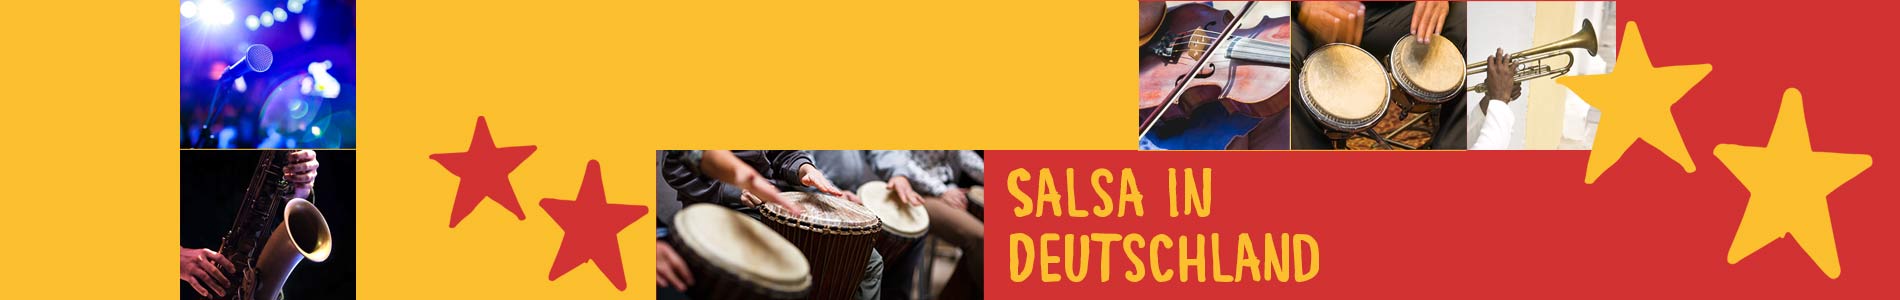 Salsa in Borne – Salsa lernen und tanzen, Tanzkurse, Partys, Veranstaltungen